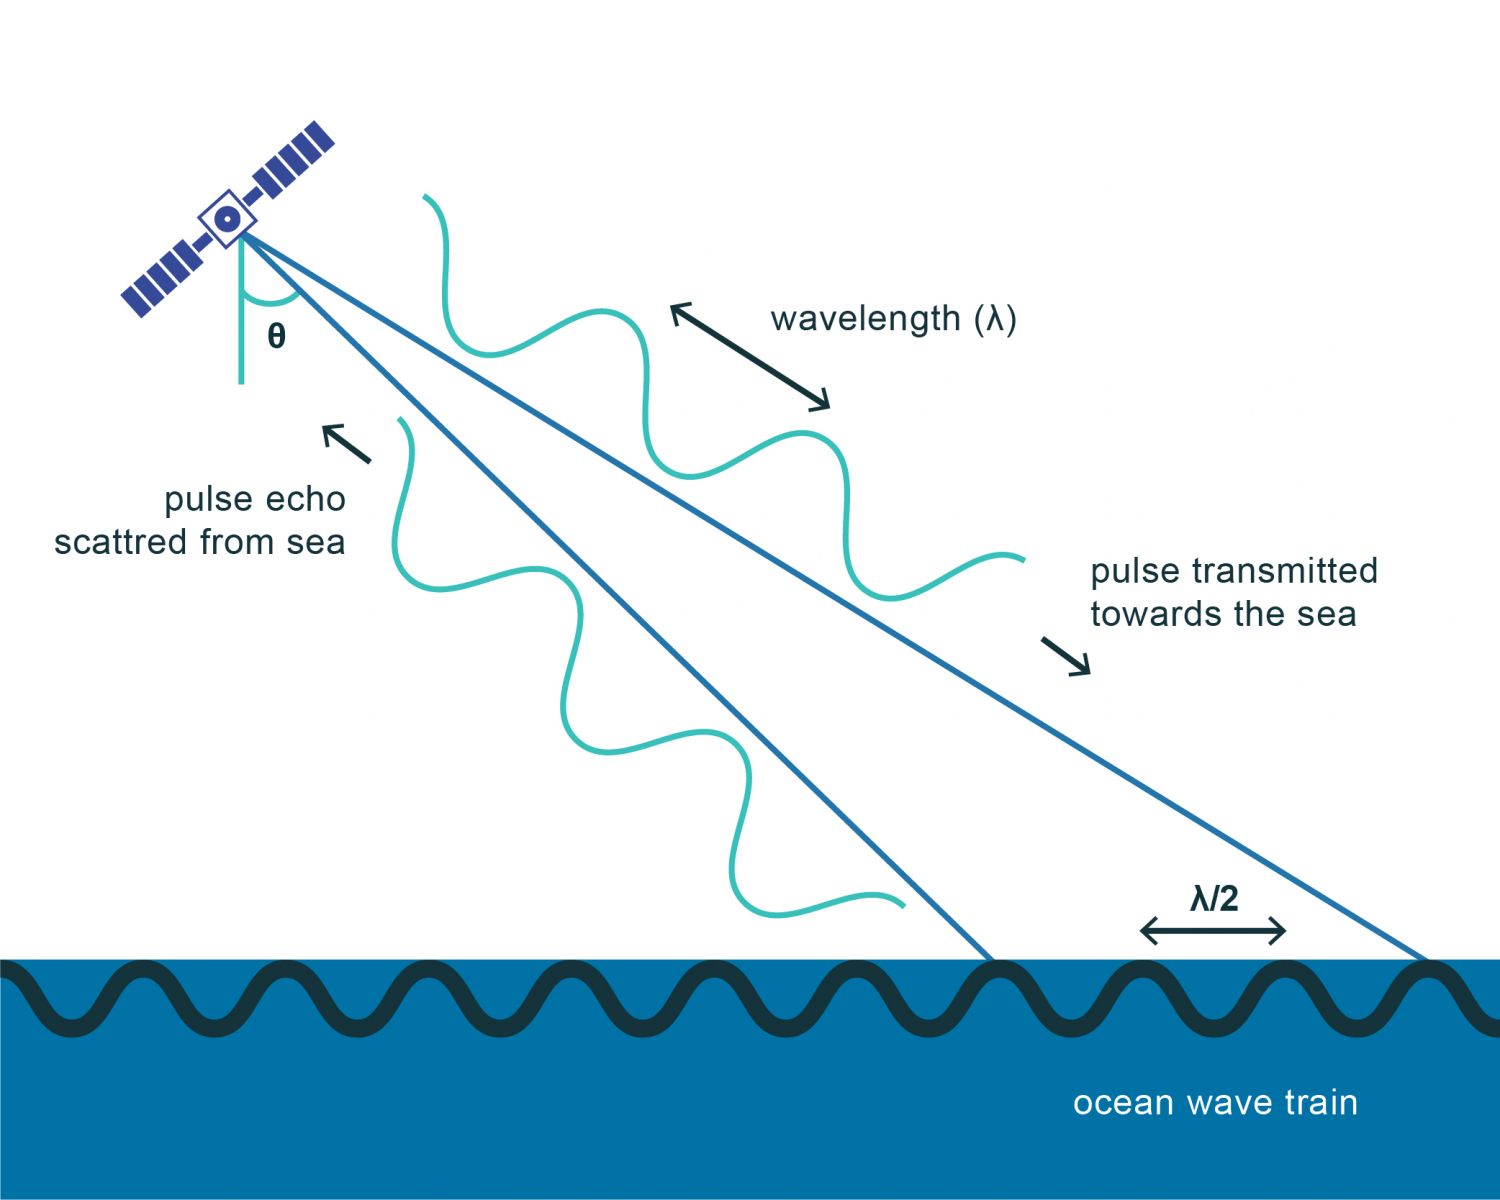 Esquema das condições necessárias para a ocorrência do mecanismo de retrodifusão de Bragg em que (lambda)r é o comprimento de onda da radiação emitida pelo SAR e (theta) é o ângulo de incidência da radiação. São condições necessárias para a ocorrência da difusão de Bragg que o comprimento de onda da superfície do mar seja semelhante ao comprimento de onda do sinal emitido e que as ondas de superfície tenham uma componente na direção de alcance do sensor. Dada a natureza da rugosidade da superfície do oceano, esta última condição é quase sempre obtida já que as ondas de pequena escala, geradas pelo vento, têm uma distribuição contínua nos comprimentos de onda. Na presença das condições para a ocorrência da difusão de Bragg, o sinal retrodifundido interage de forma construtiva, i.e., entra em ressonância com a ondulação da superfície do oceano com escala semelhante (ordem dos cm), resultando num aumento da energia do sinal recebido. A utilização deste ficheiro é regulada nos termos da licença Creative Commons Attribution 4.0 (CC BY-NC-ND 4.0, https://creativecommons.org/licenses/by-nc-nd/4.0/) 